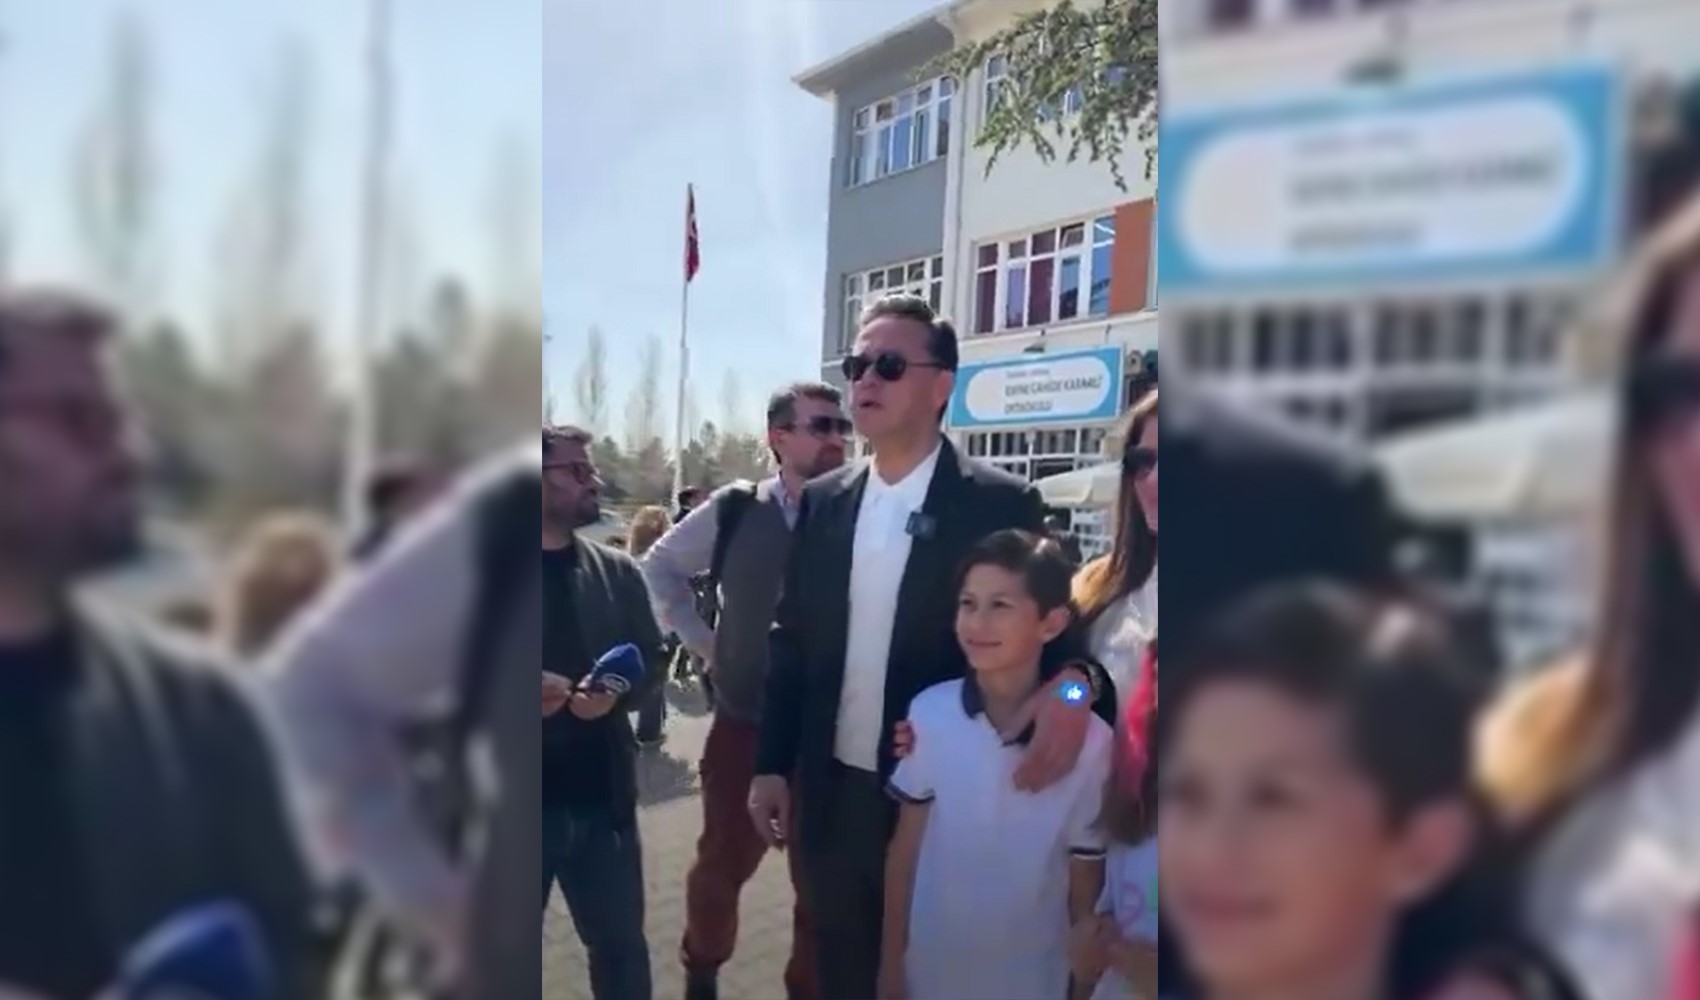 AKP'nin Eskişehir Büyükşehir Belediye Başkan adayı Nebi Hatipoğlu gazetecilerle tartıştı: 'Ne çekiyorsun oğlum?'